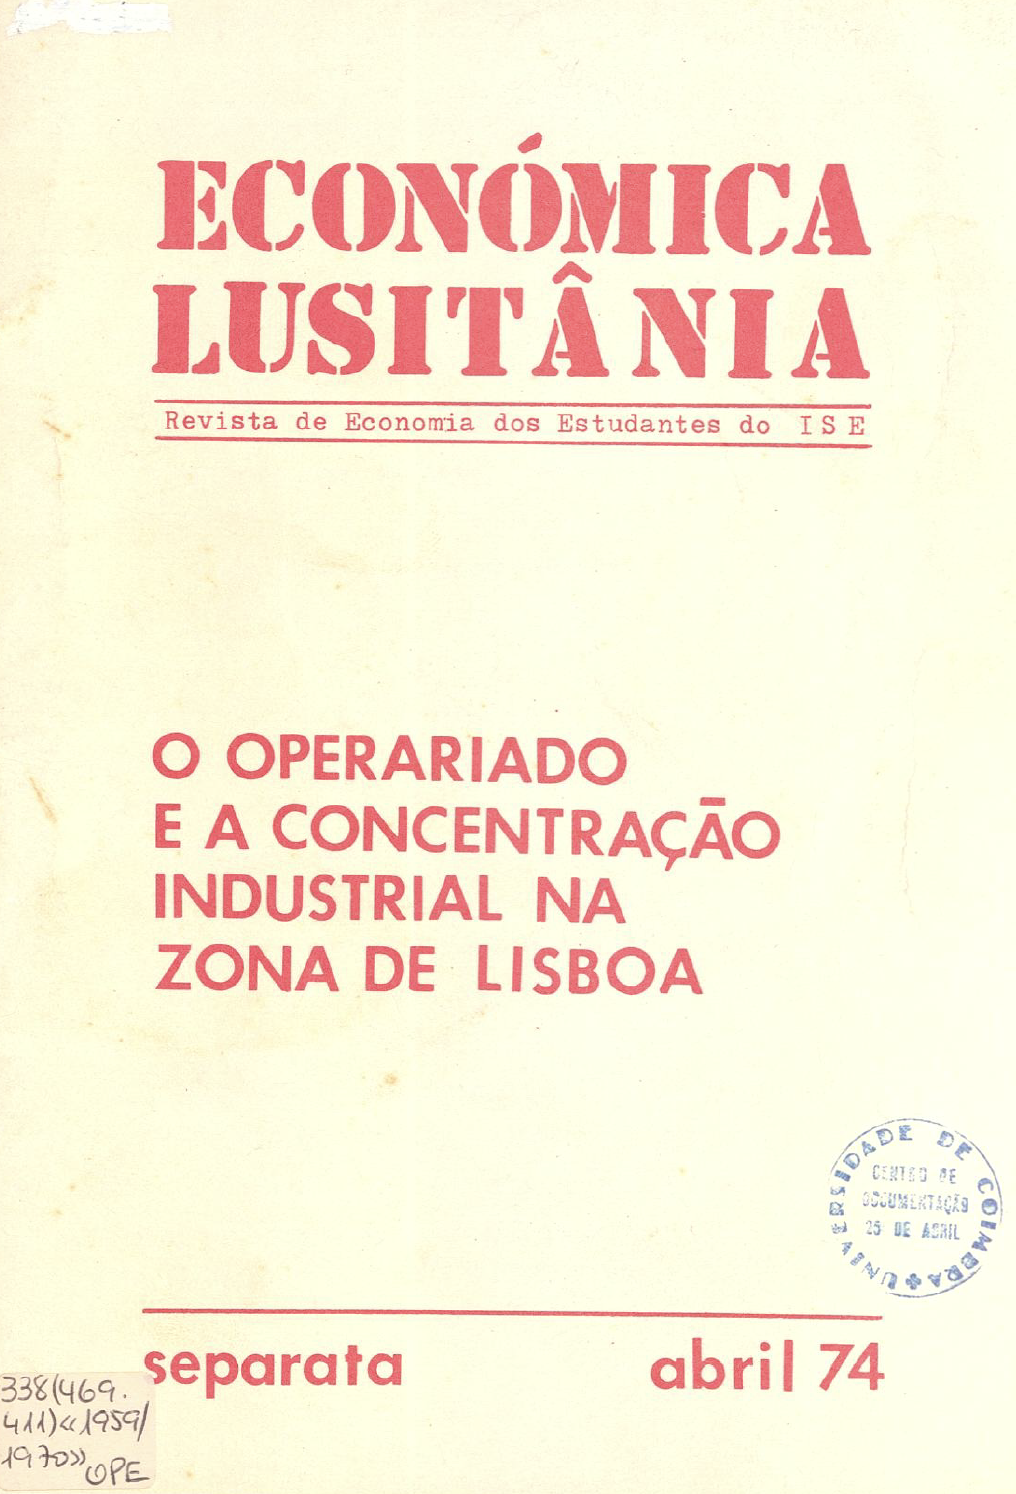 Económica Lusitânica - O Operariado e a concentração industrial na zona de Lisboa (abril de 1974)